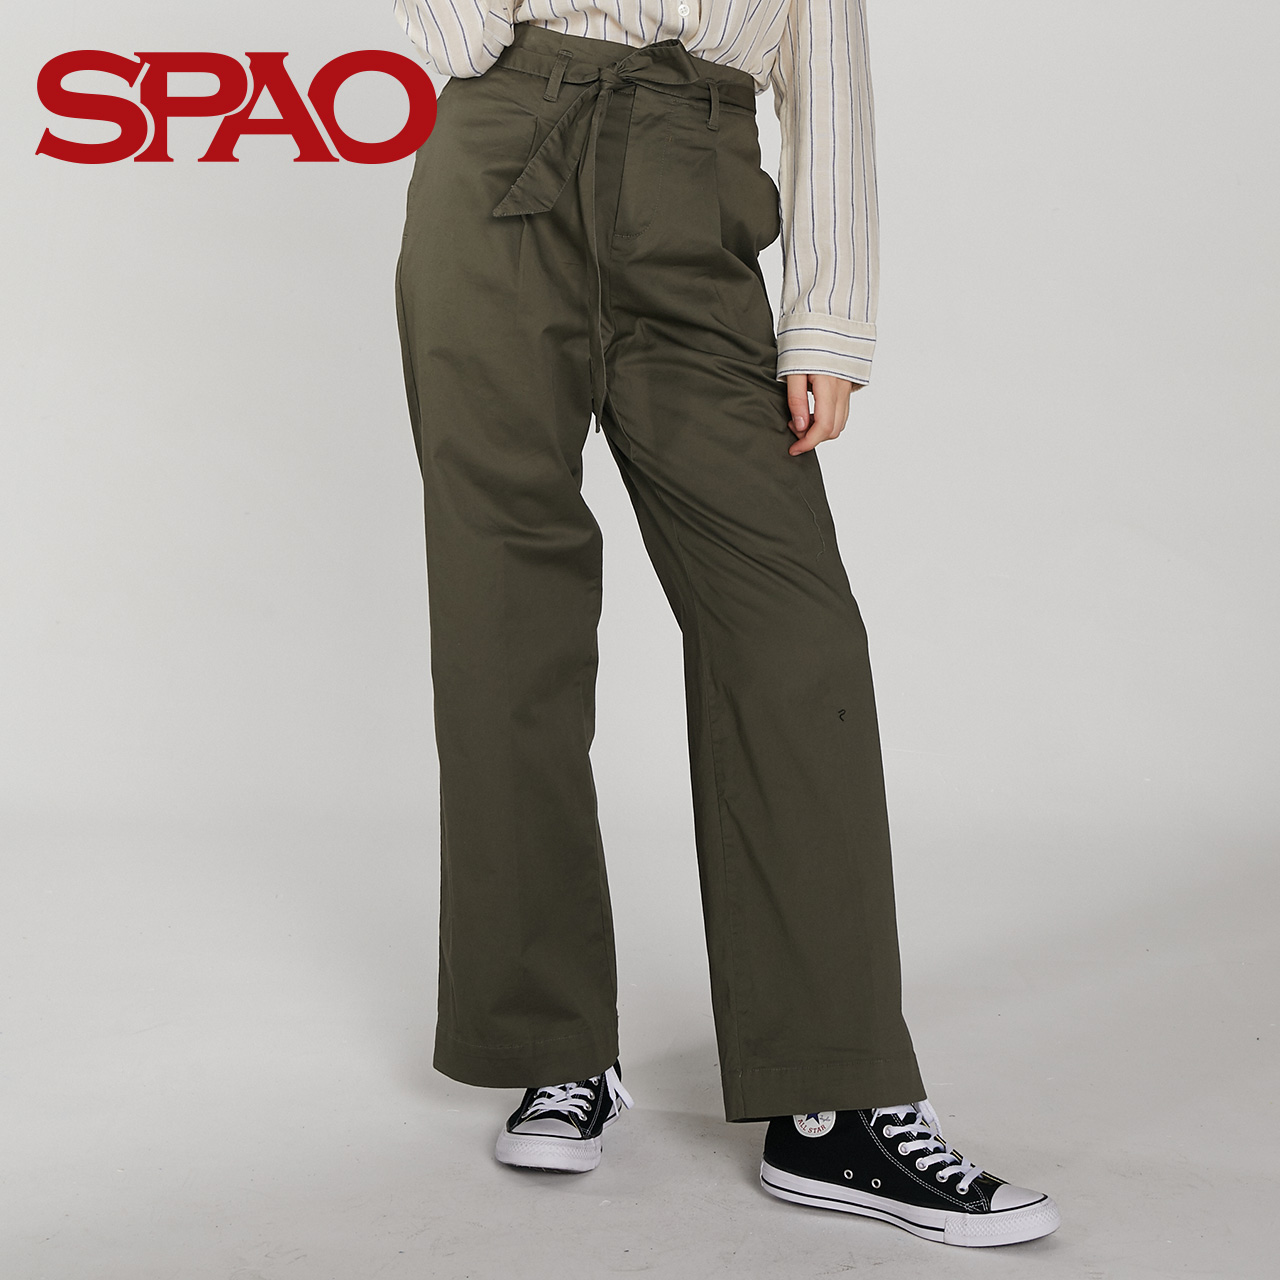 SPAO SPTC824G16 女士休闲纯色系带长裤